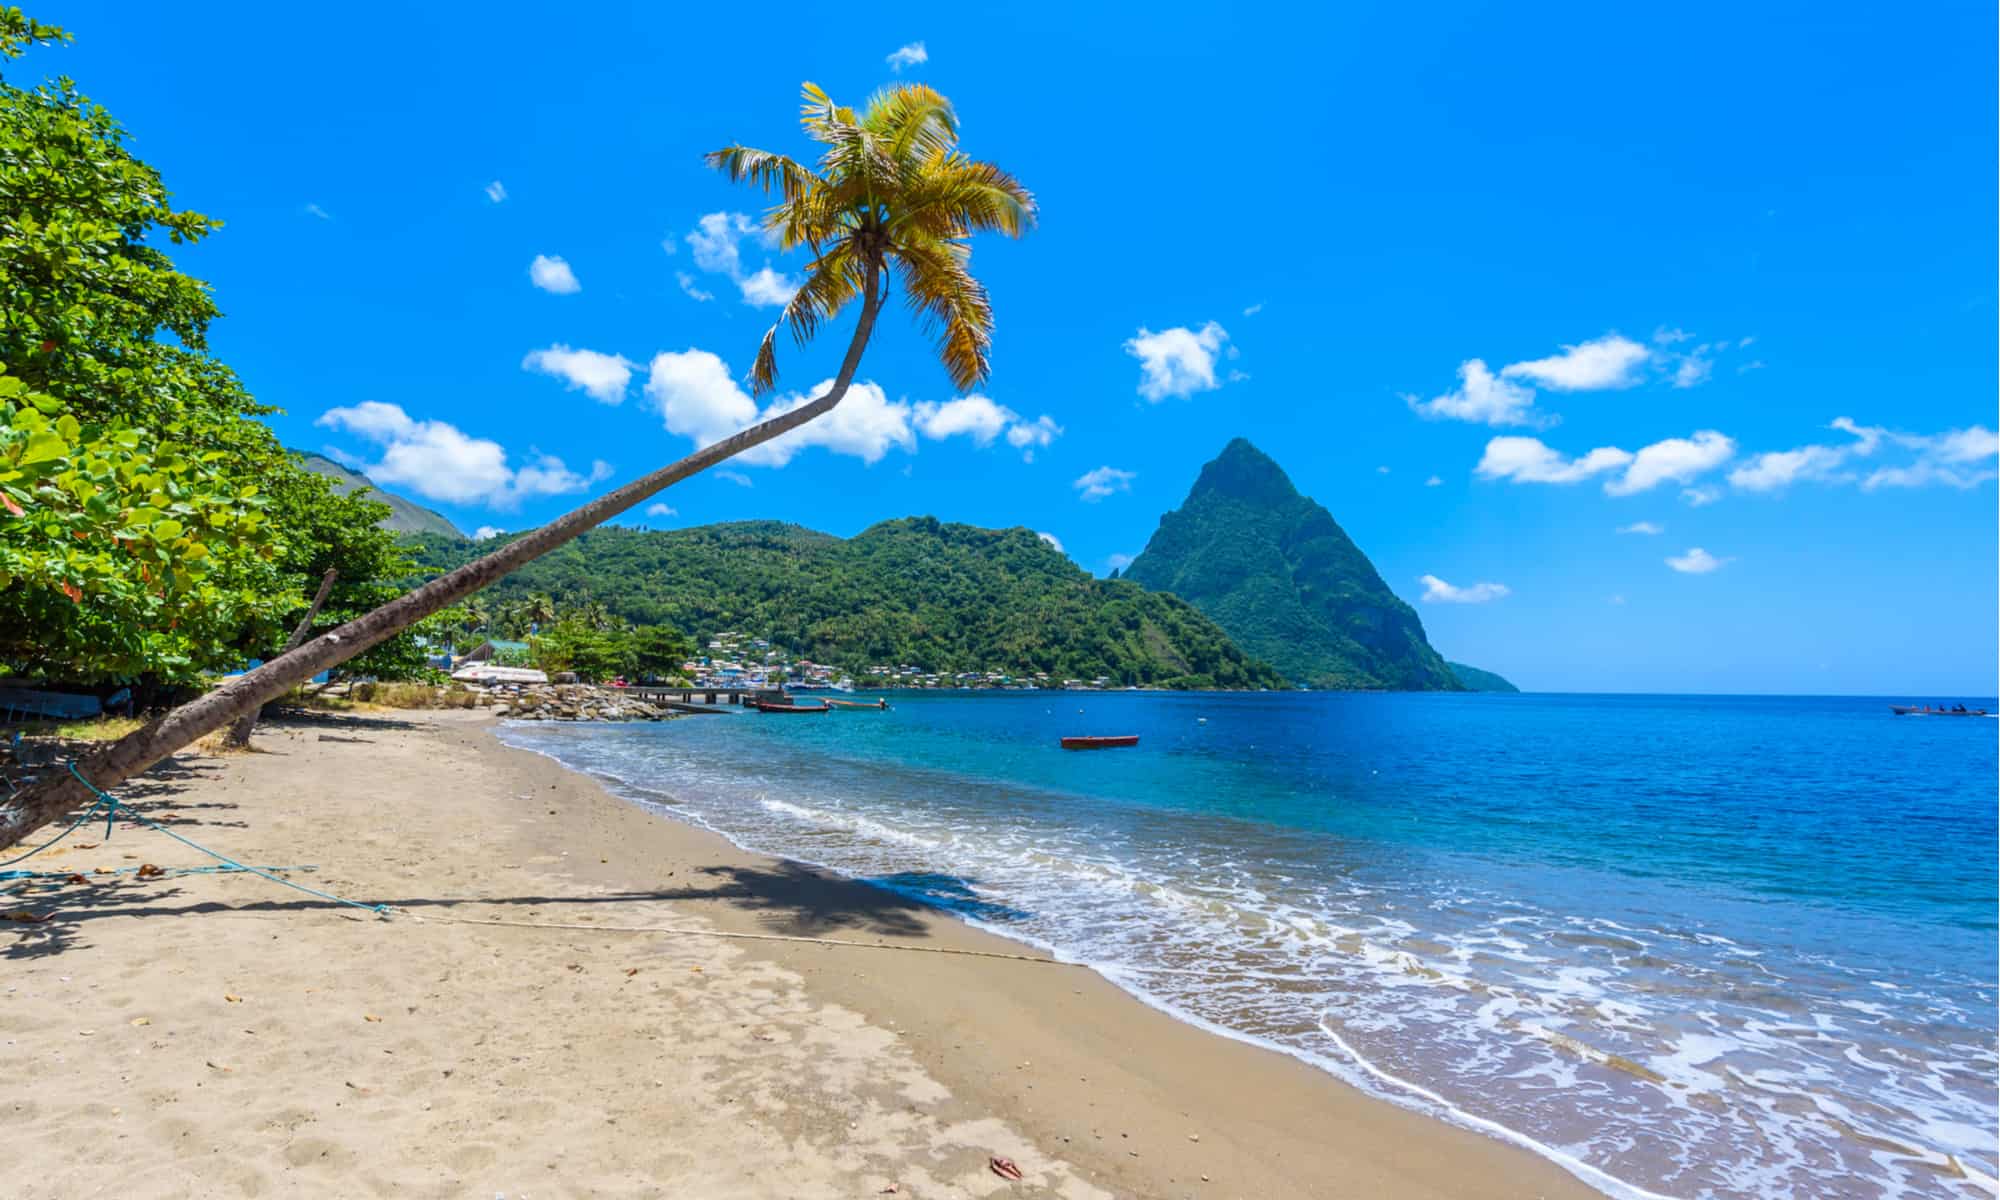 Le isole più belle del mondo: Santa Lucia